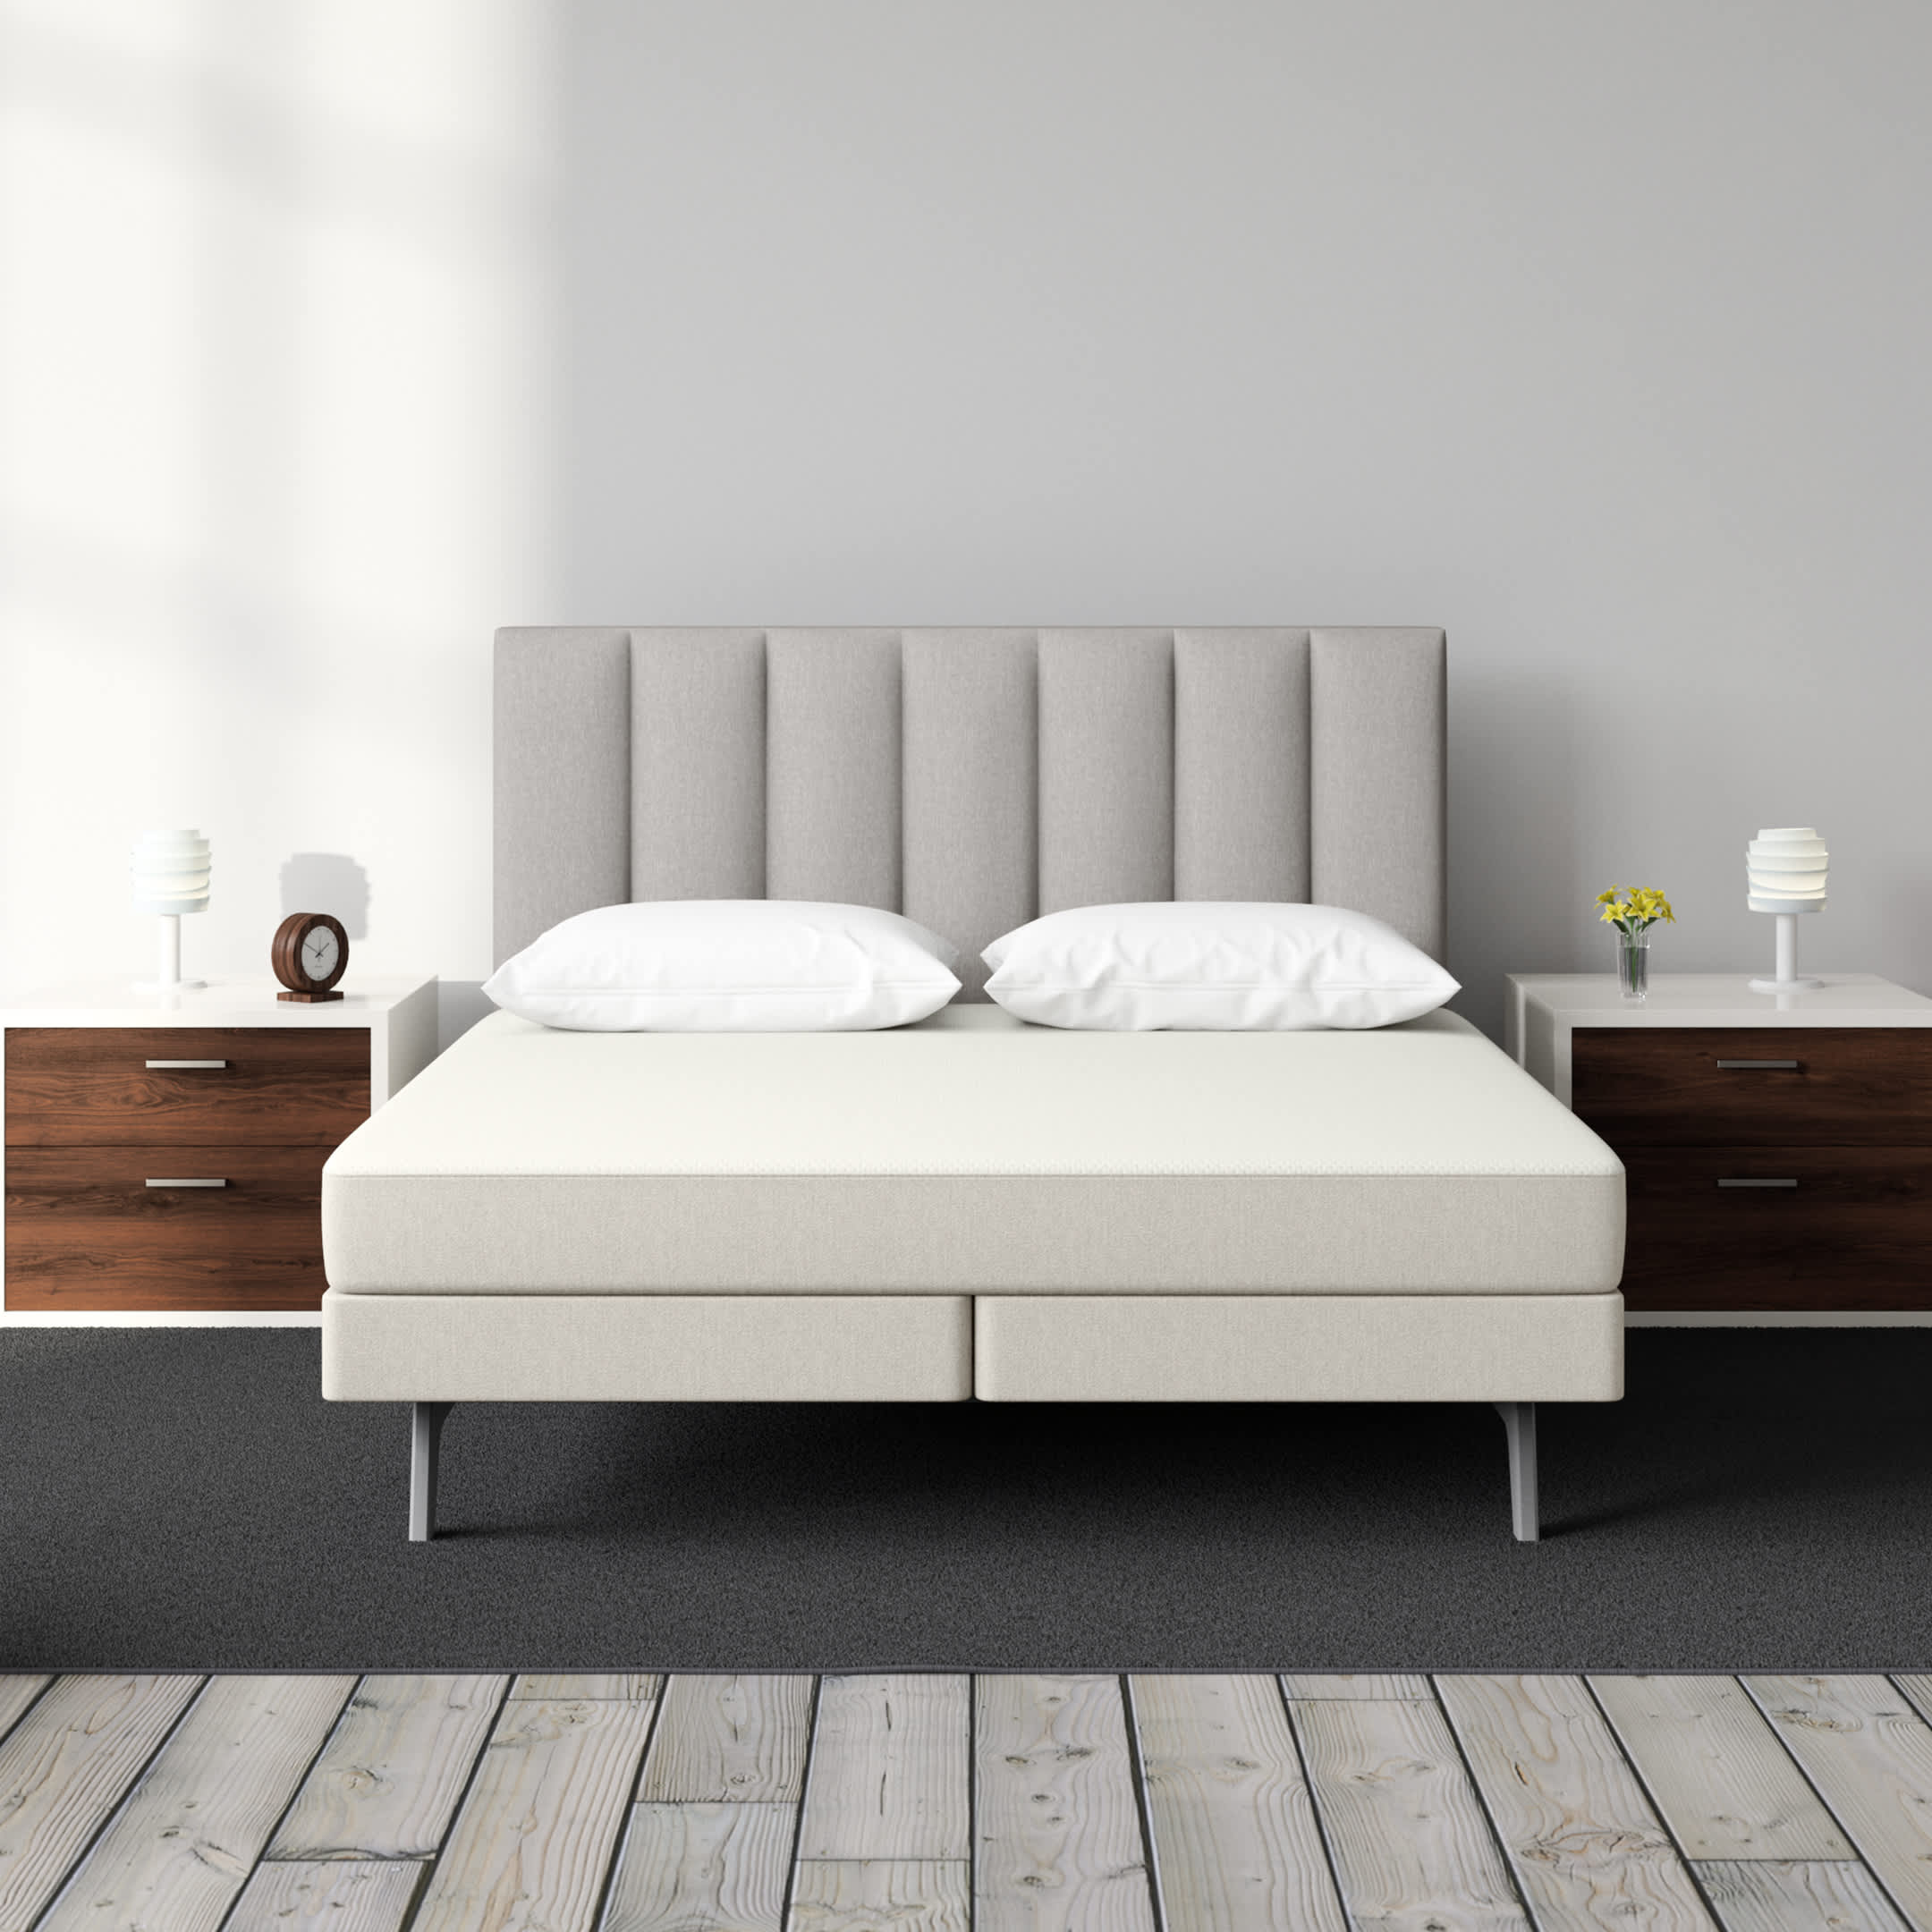 mattresses sleep number 360 c2 smart bed